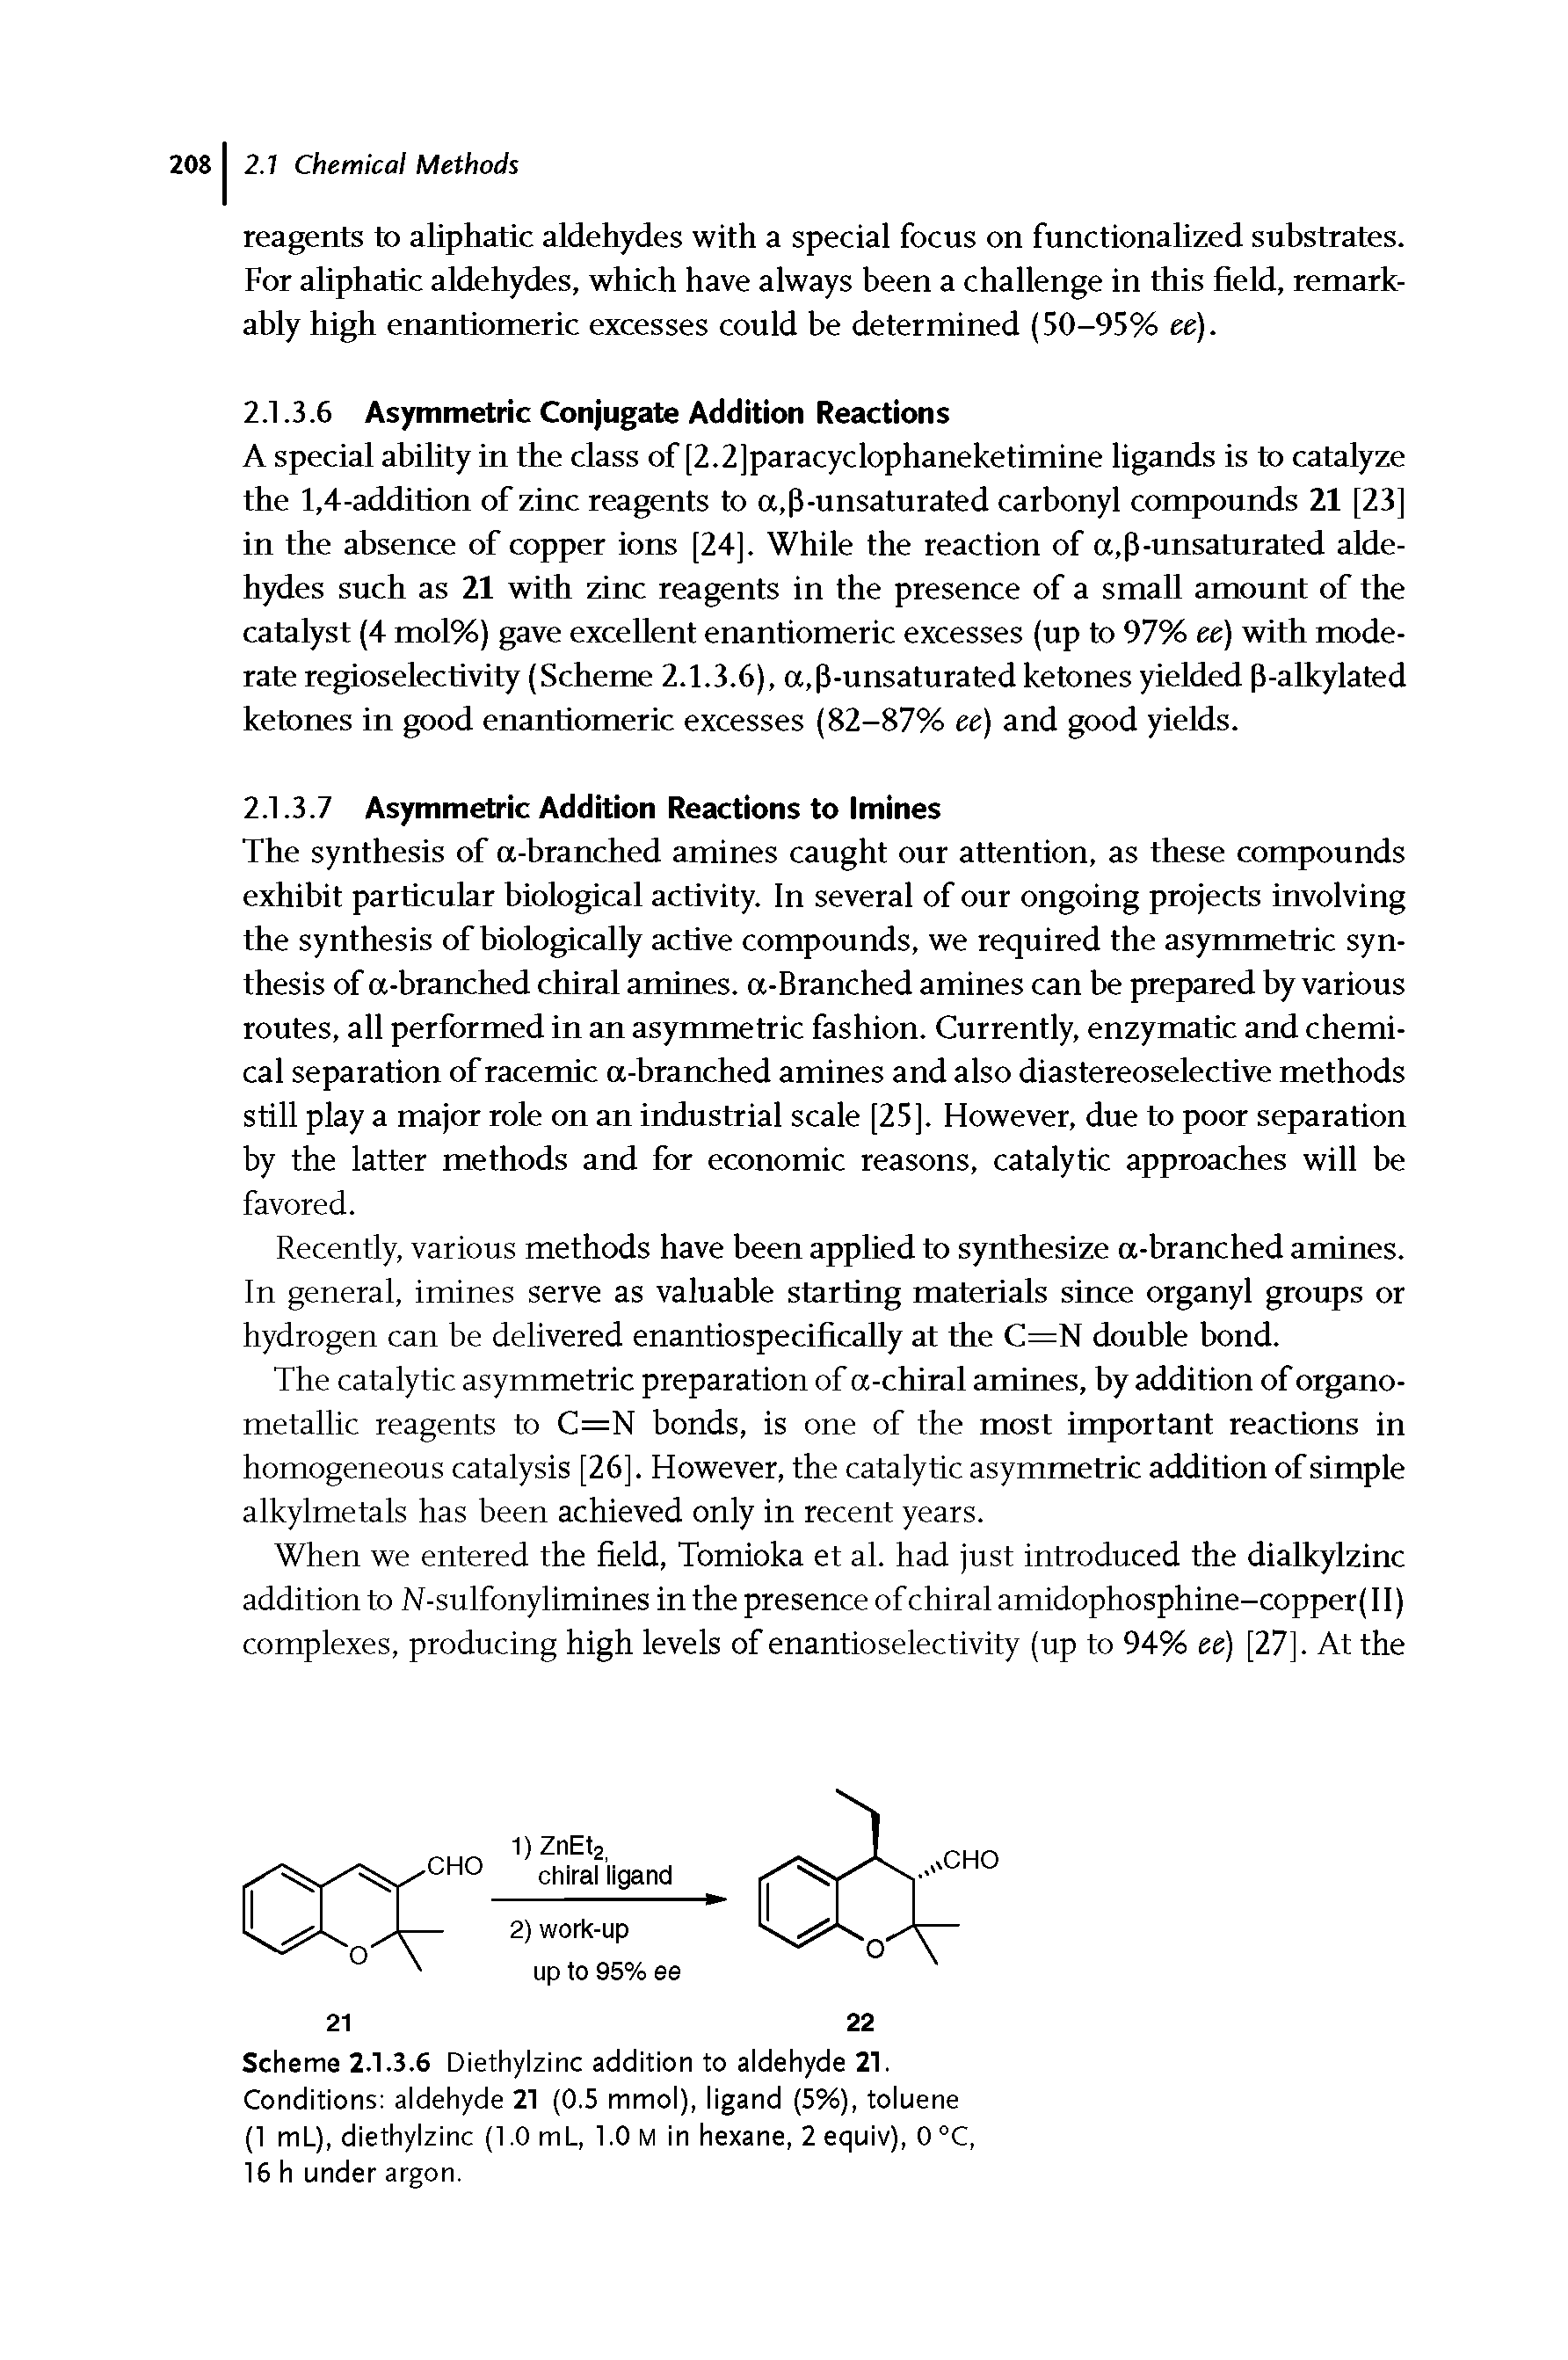 Scheme 2.1.3.6 Diethylzinc addition to aldehyde 21. Conditions aldehyde 21 (0.5 mmol), ligand (5%), toluene (1 mL), diethylzinc (1.0 mL, 1.0 M in hexane, 2 equiv), 0 °C, 16 h under argon.